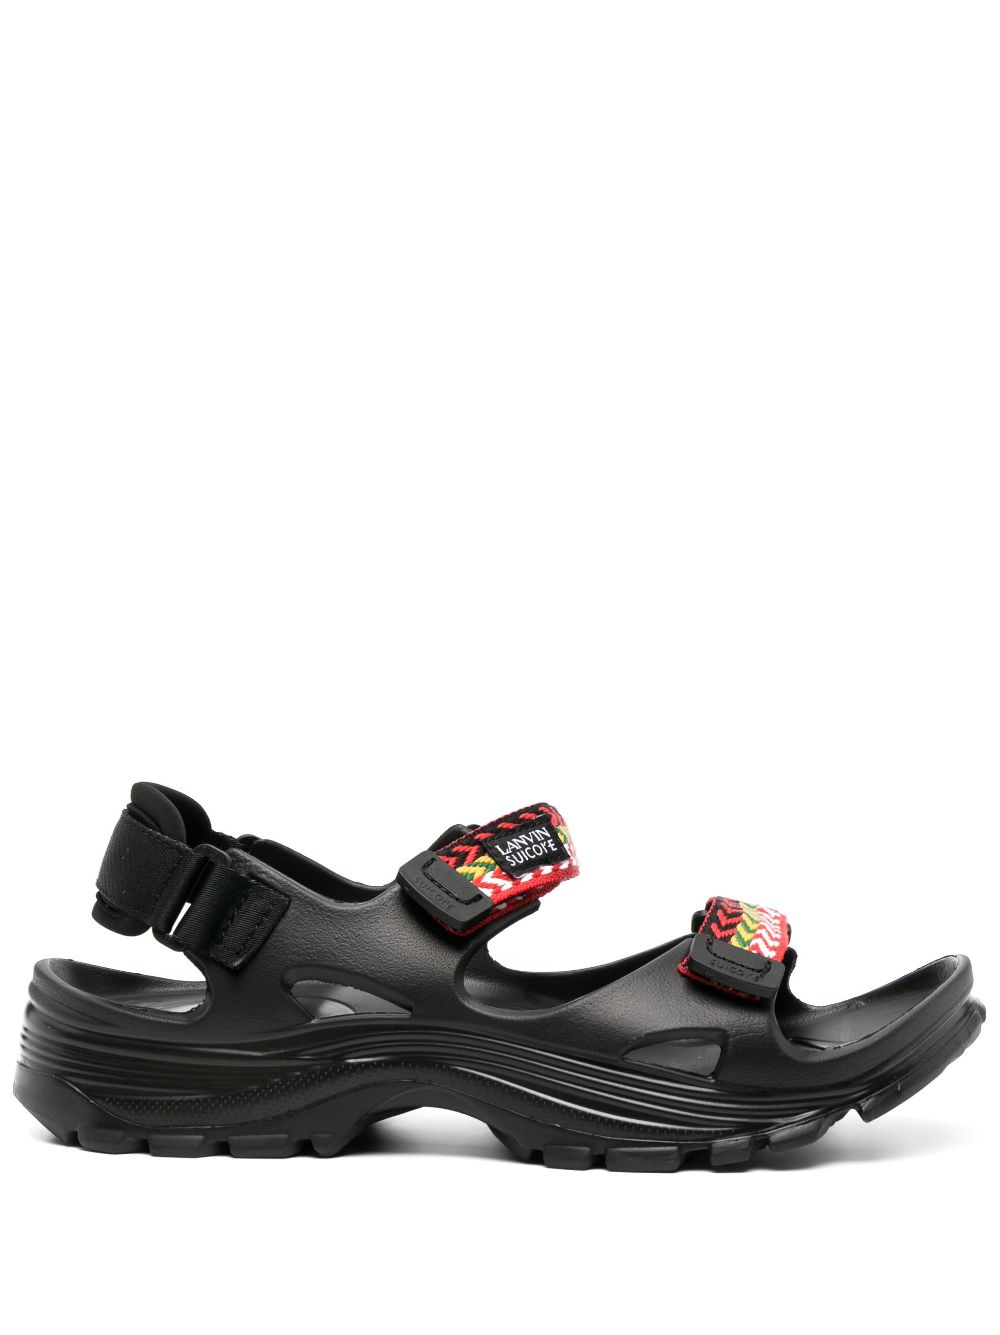 Lanvin x Suicoke Curb sandals - Black von Lanvin